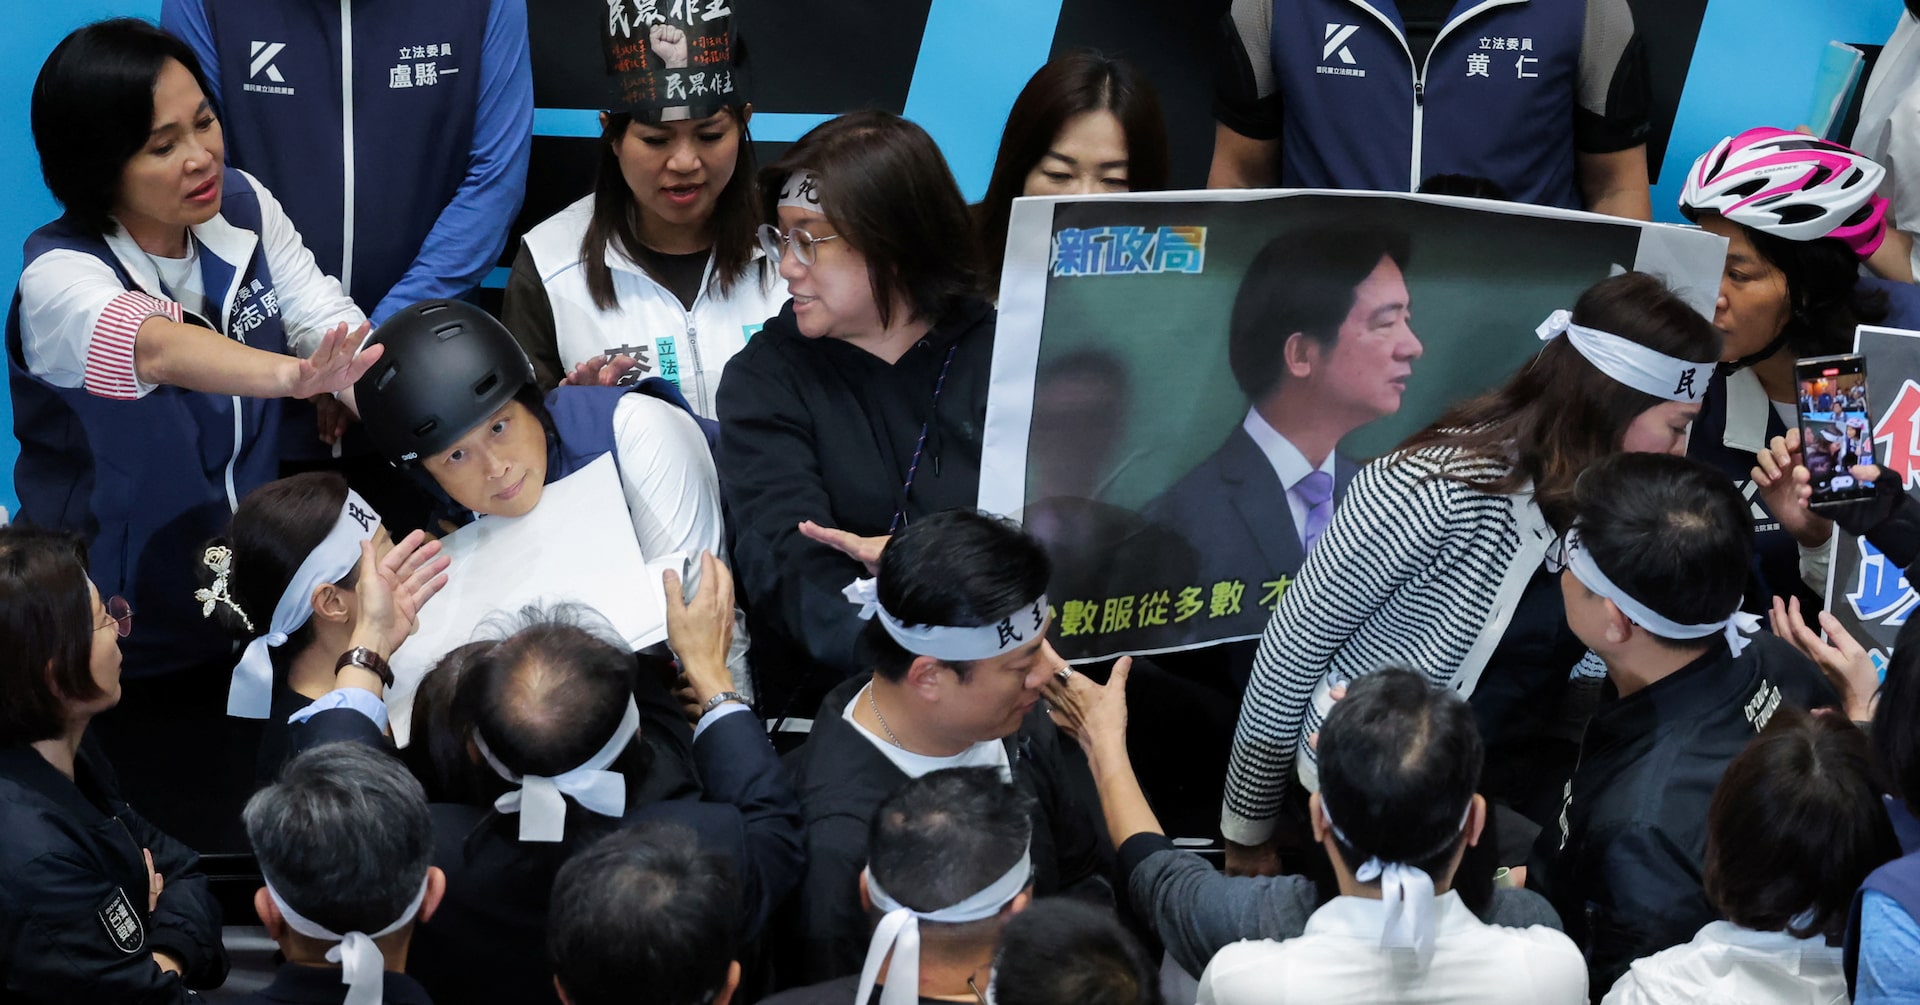 台湾議会、改革巡り紛糾 野党案への抗議で数百人がデモ